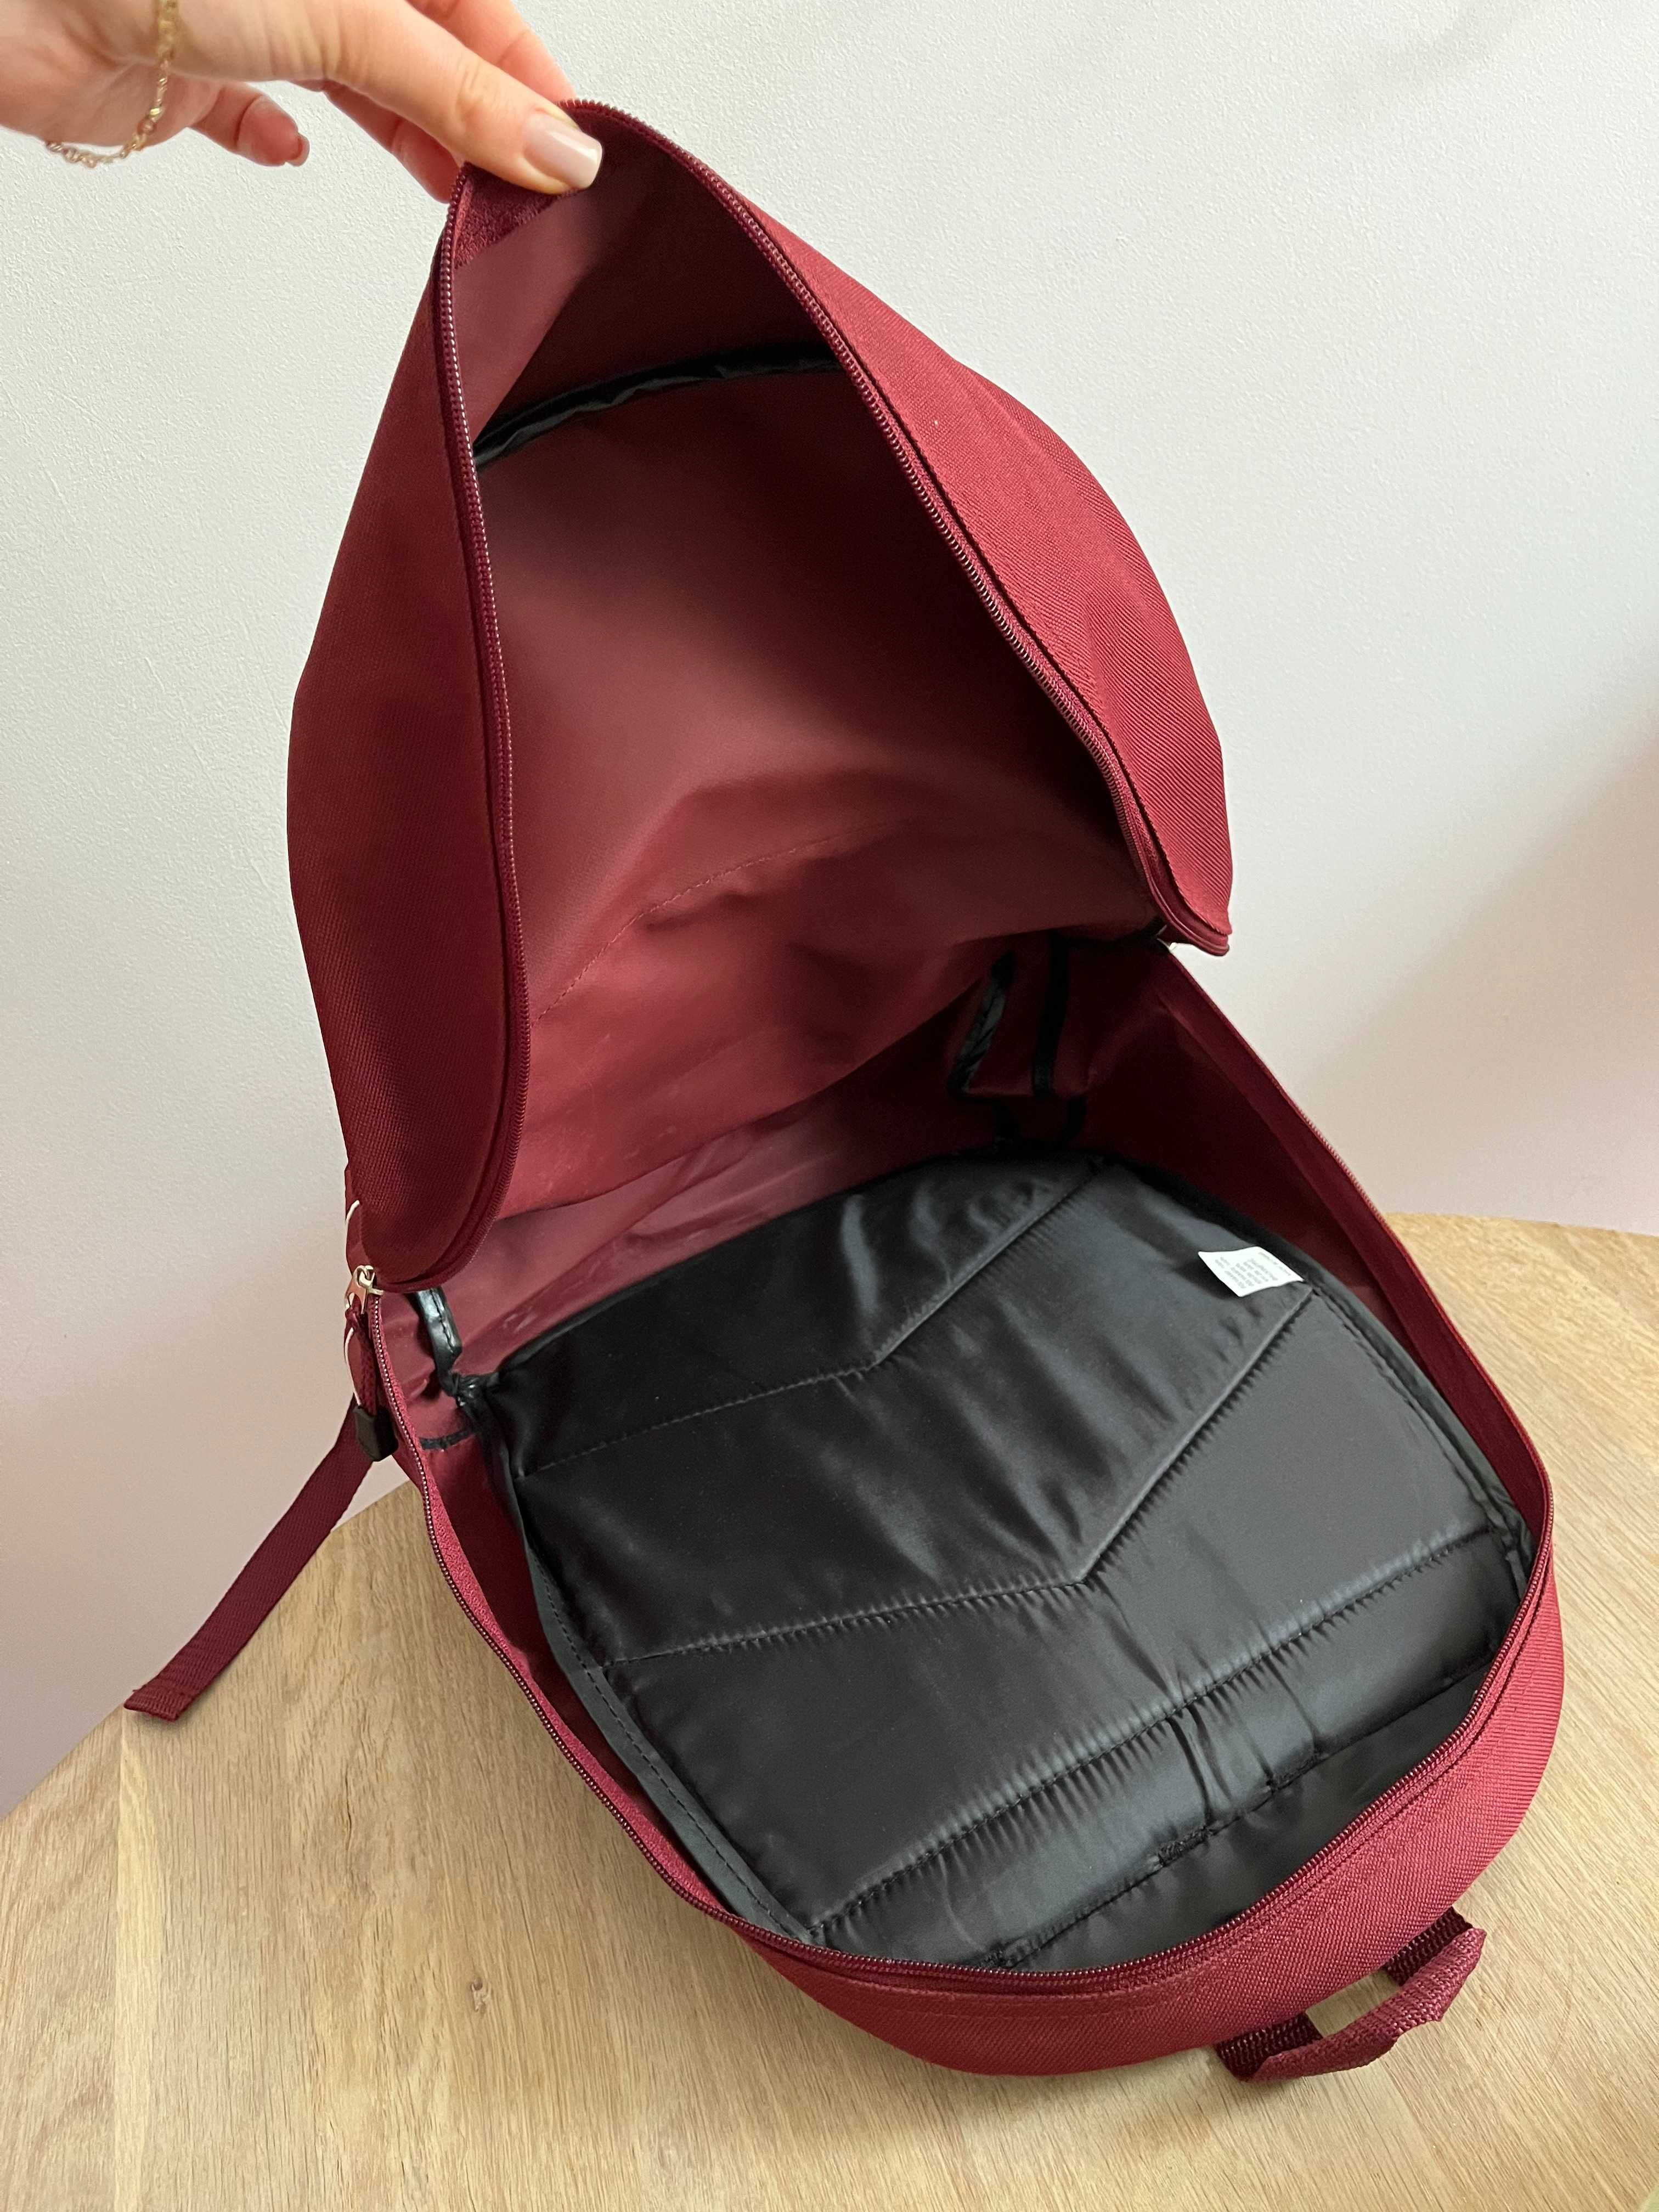 Hummel sport plecak torba na plecy szkoła do szkoły szkolny dziecko